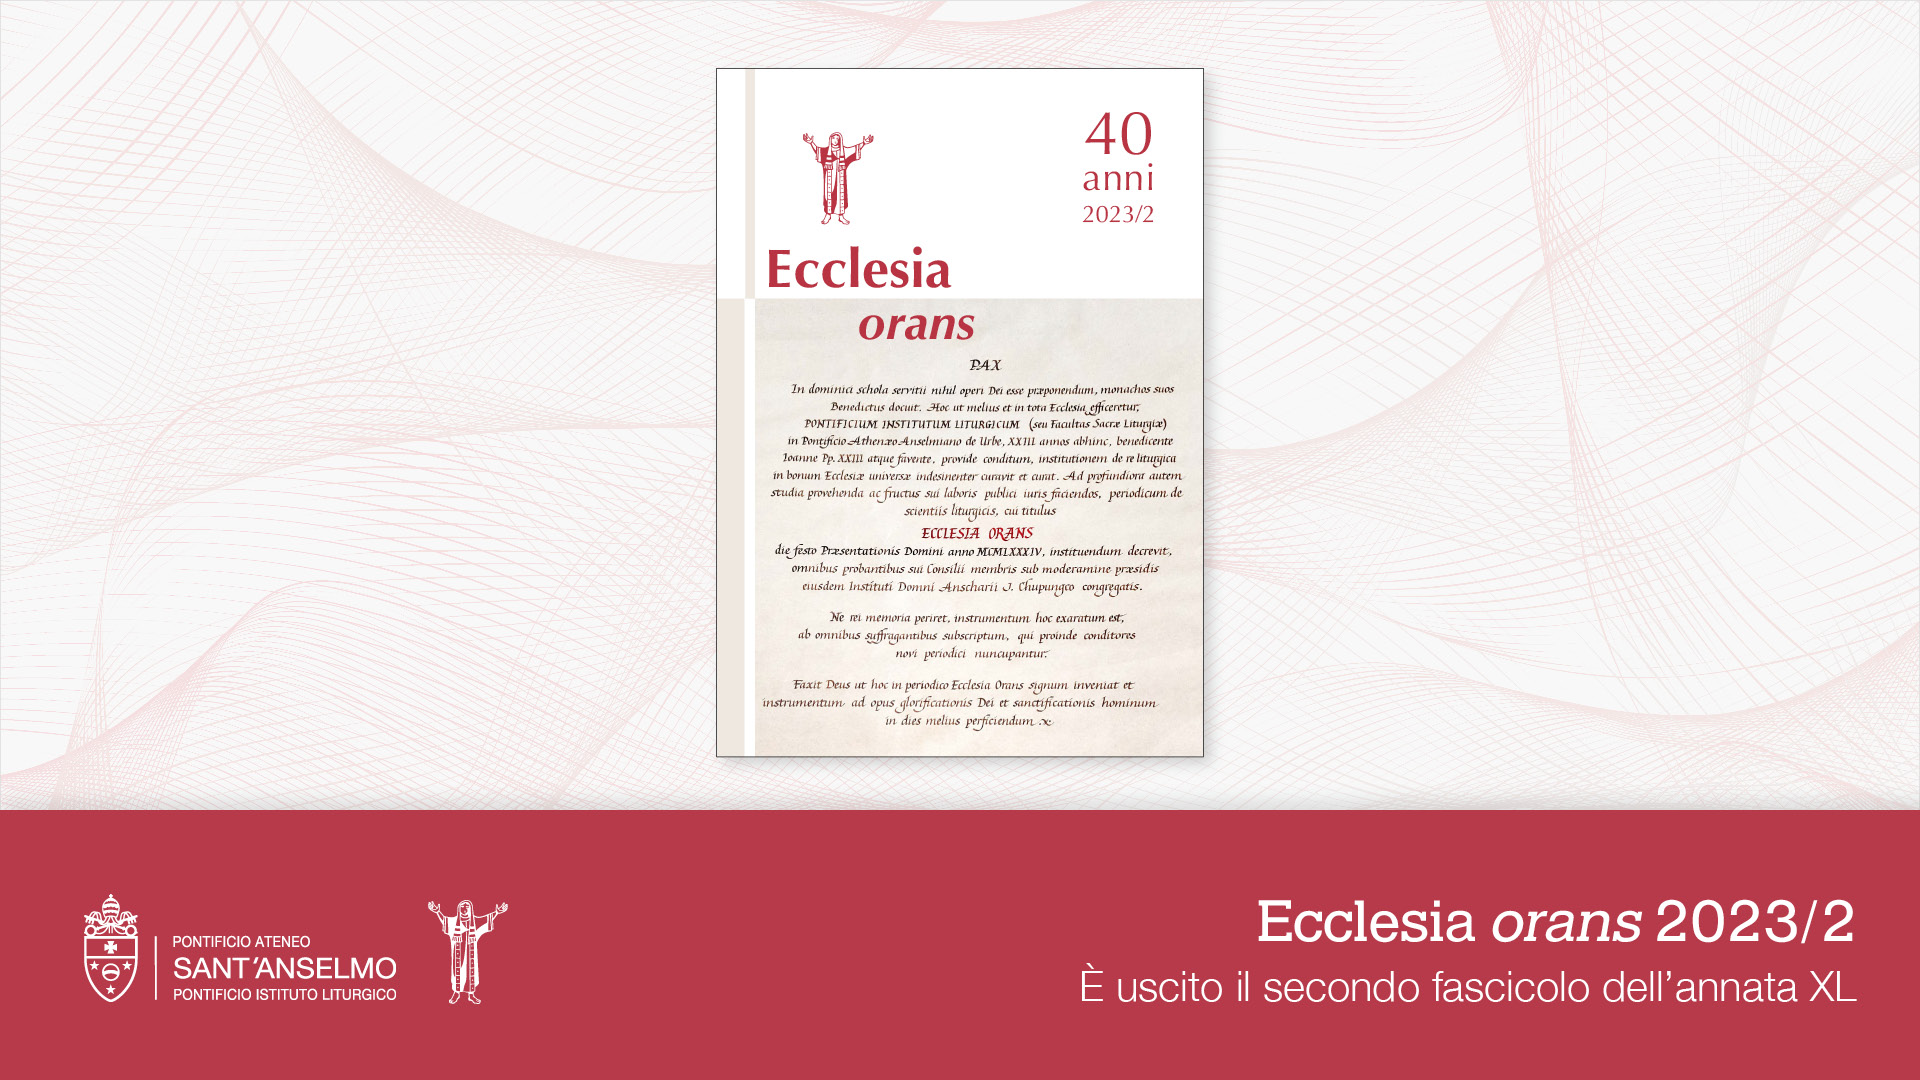 Ecclesia orans 2023/2